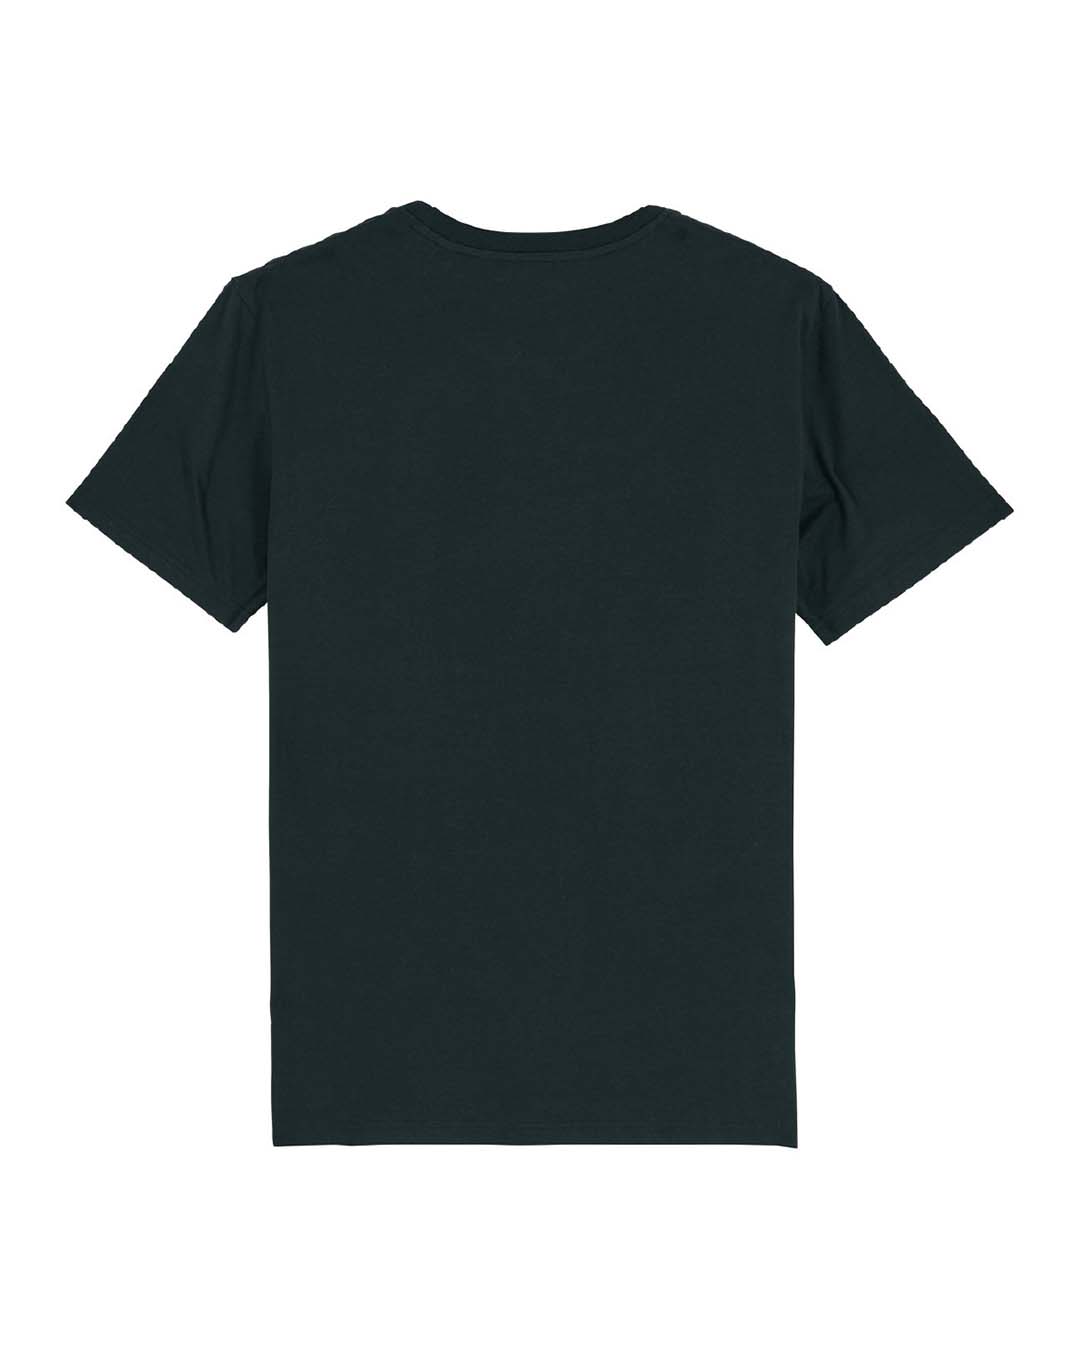 R x R Unisex T-Shirt - Black